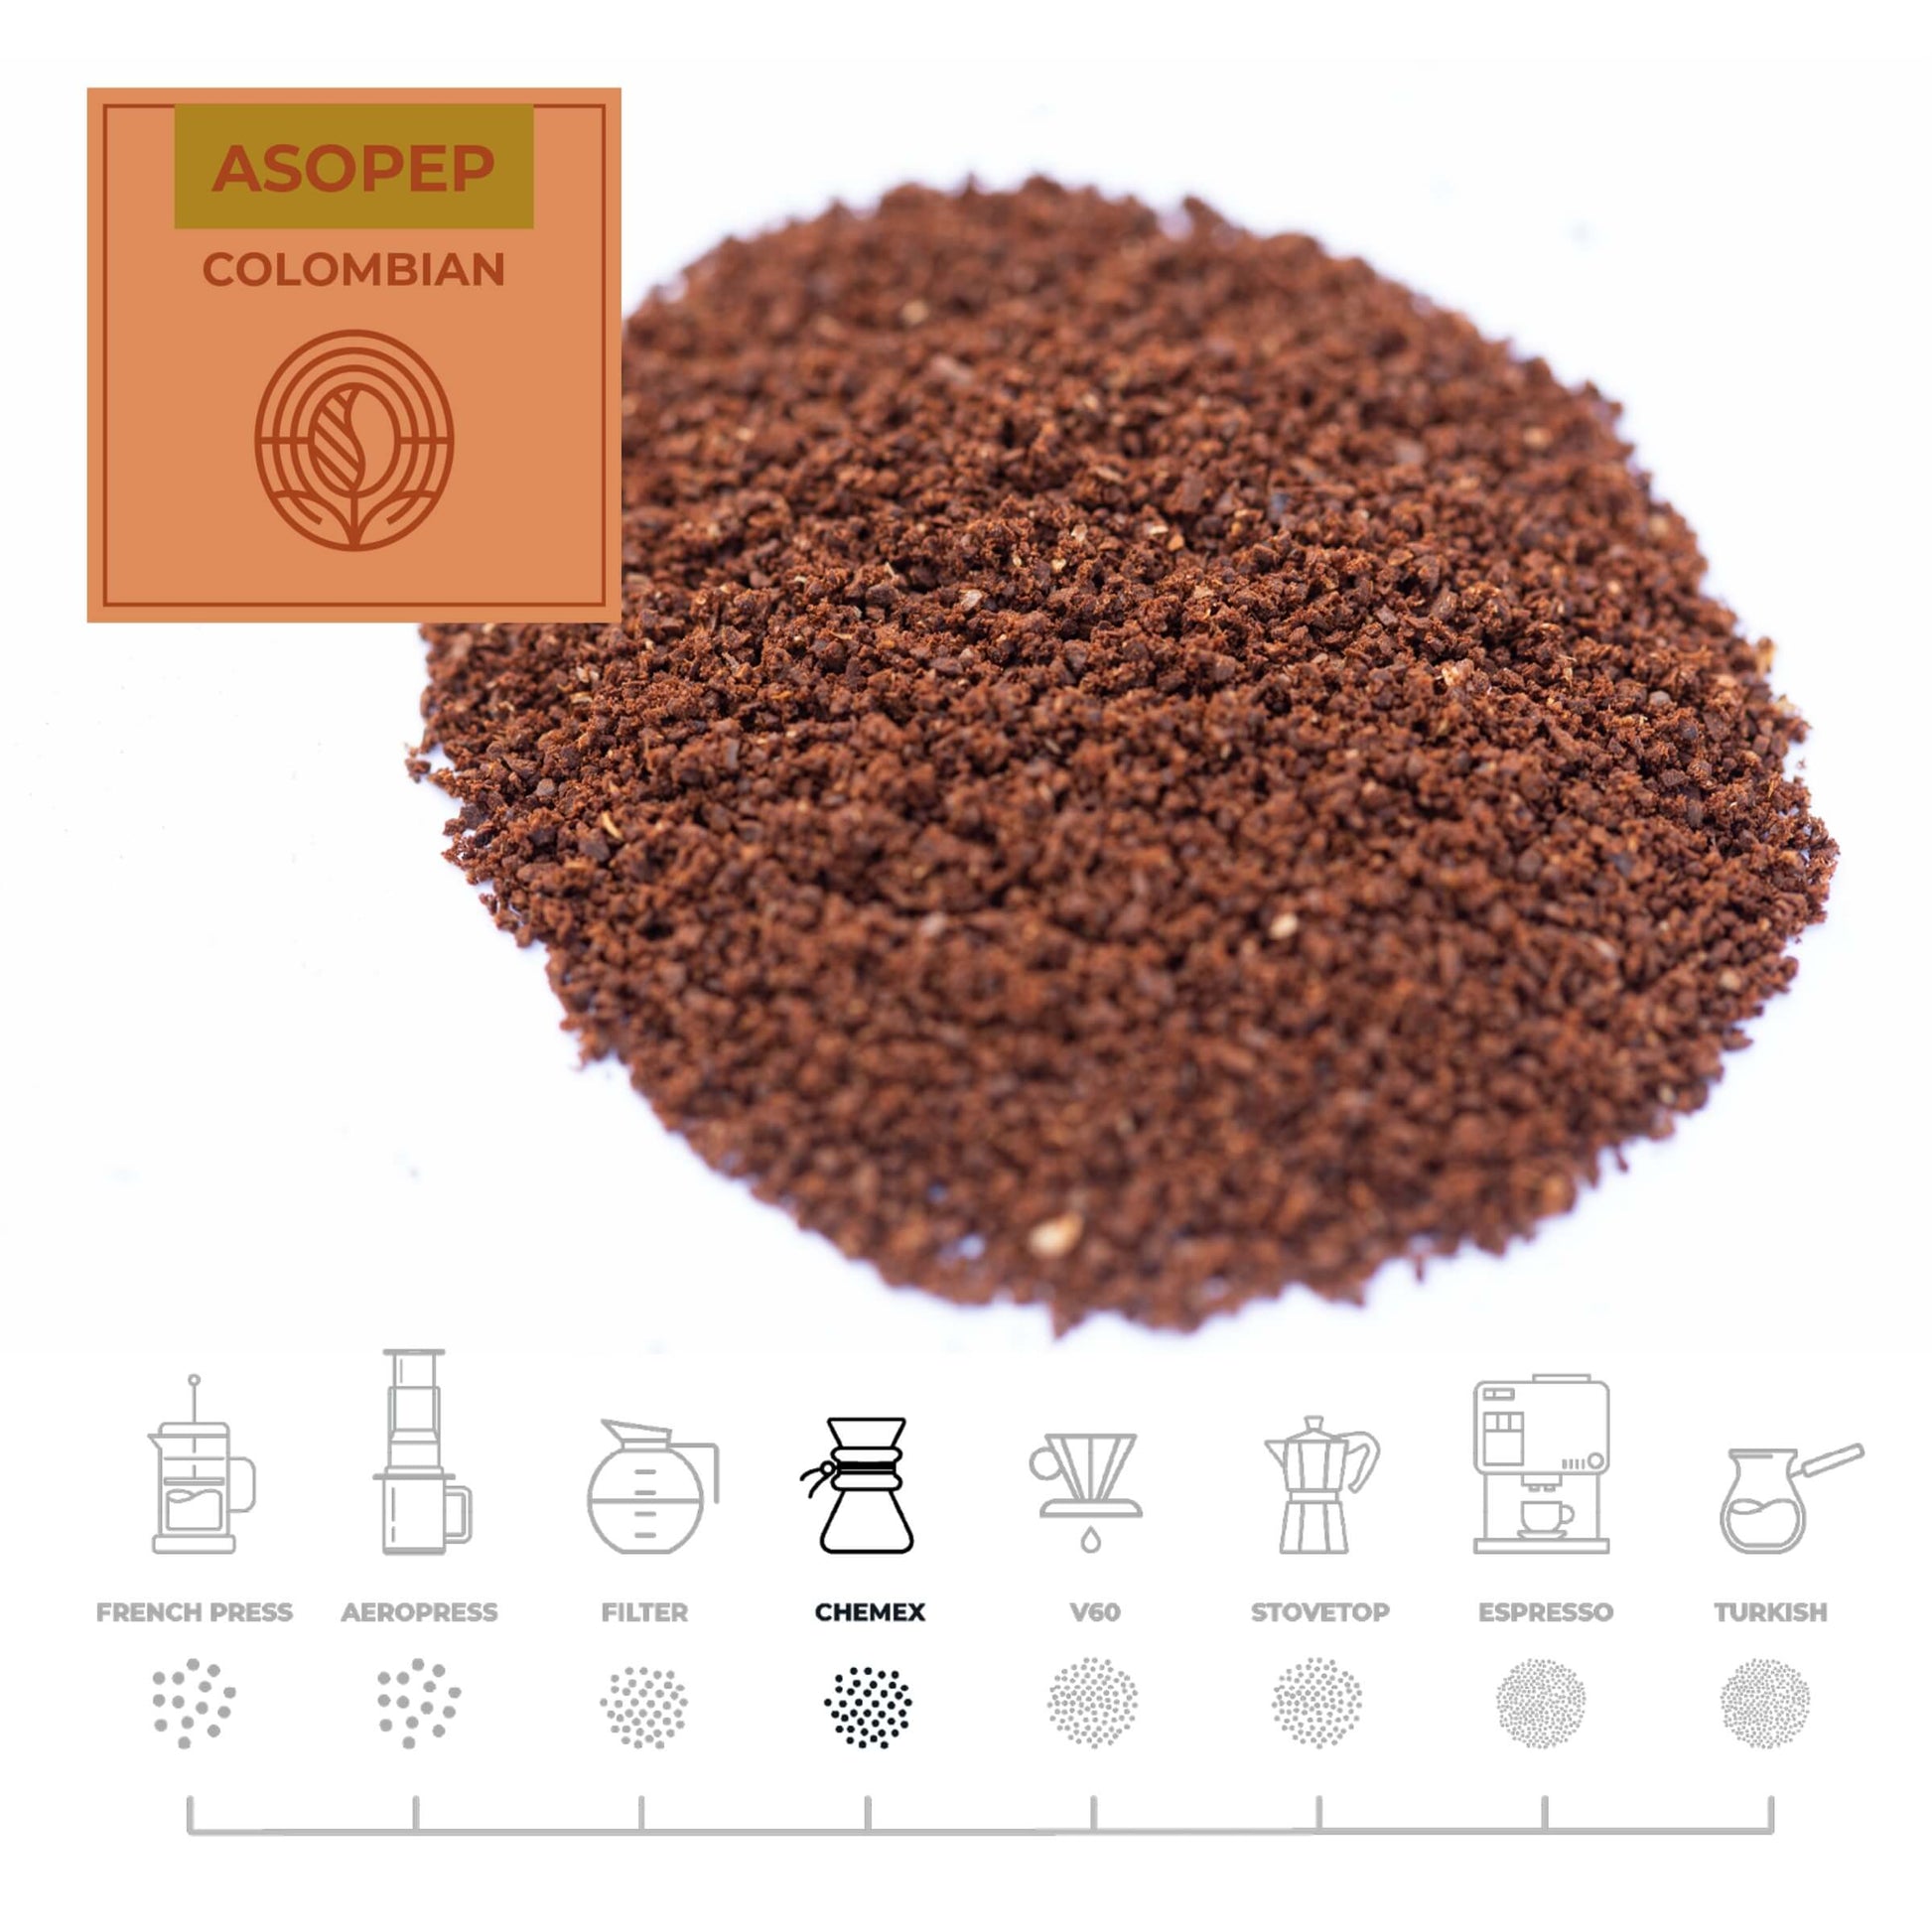 Colombian-Asopep-Coffee-Chemex_RAW-Coffee-Company